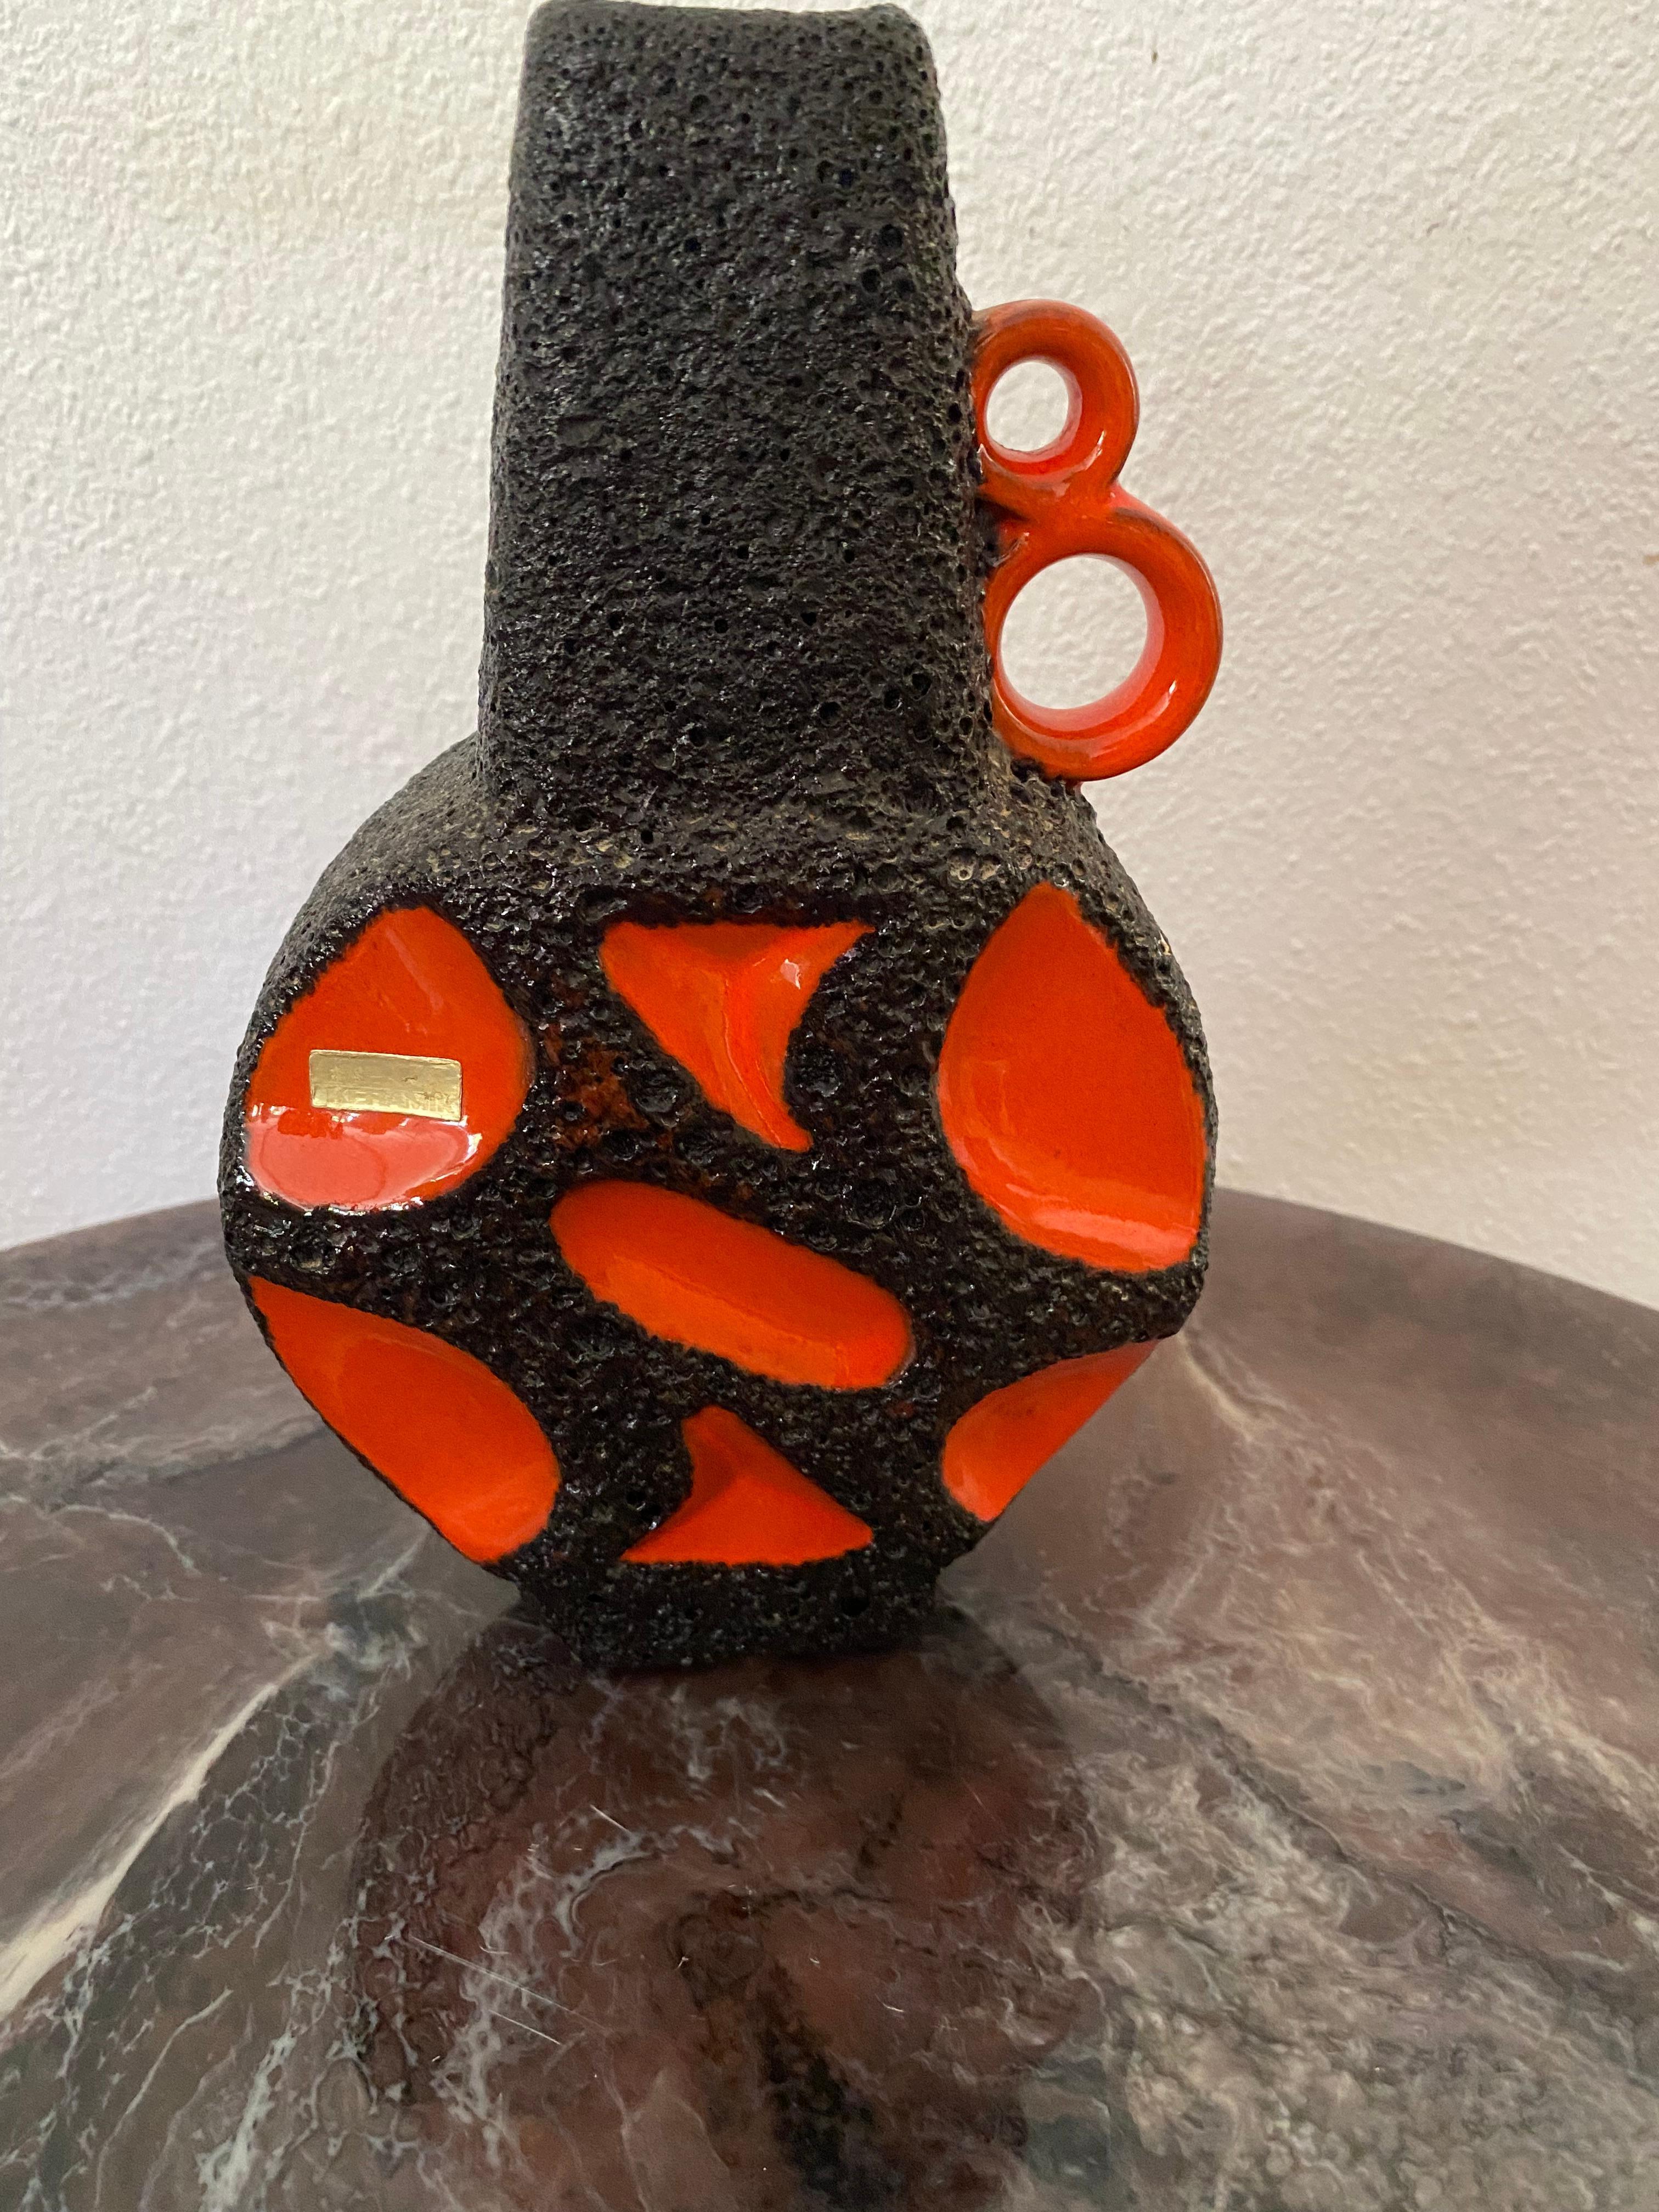 Un jarrón Roth Keramik, de color naranja perfilado con lava negra. Estos jarrones están muy buscados. Al Model No. también se le llama El Banjo, debido a su forma.
Etiqueta original.

